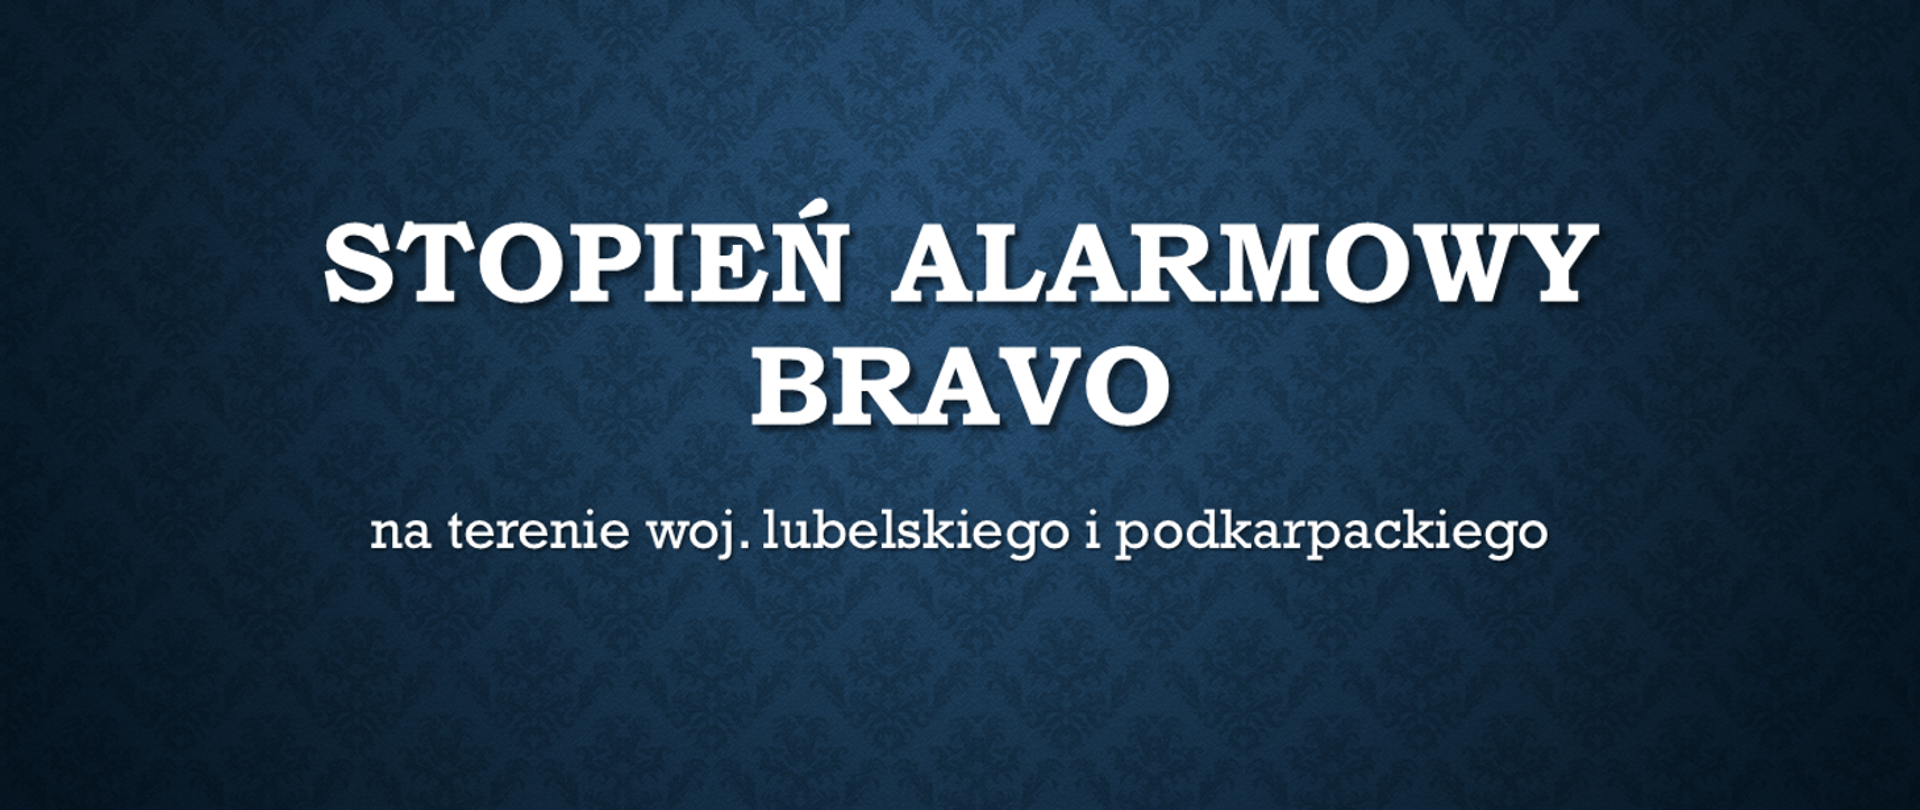 Niebieska grafika z tekstem "Stopień alarmowy BRAVO na terenie woj. lubelskiego i podkarpackiego"